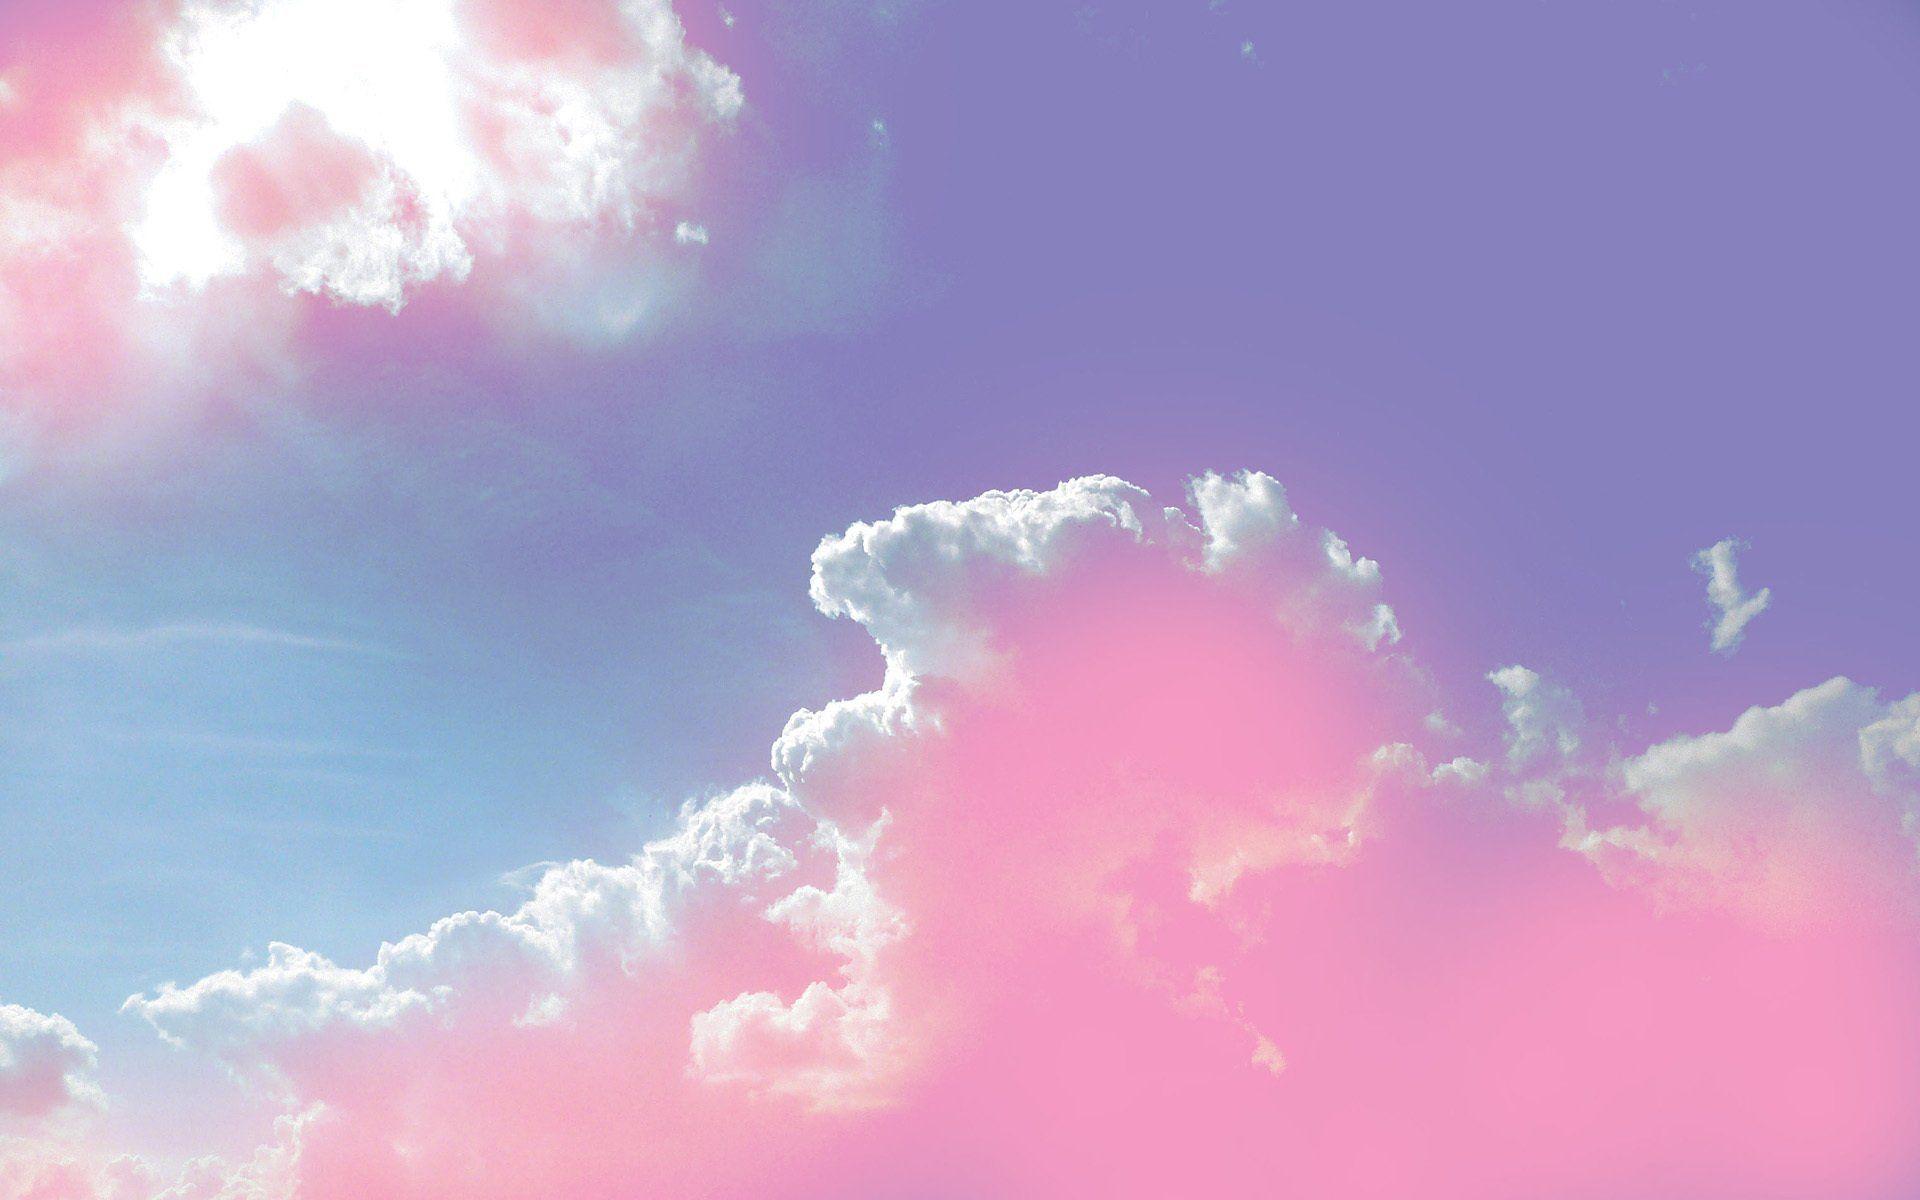 Hình nền mây hồng dễ thương cho desktop